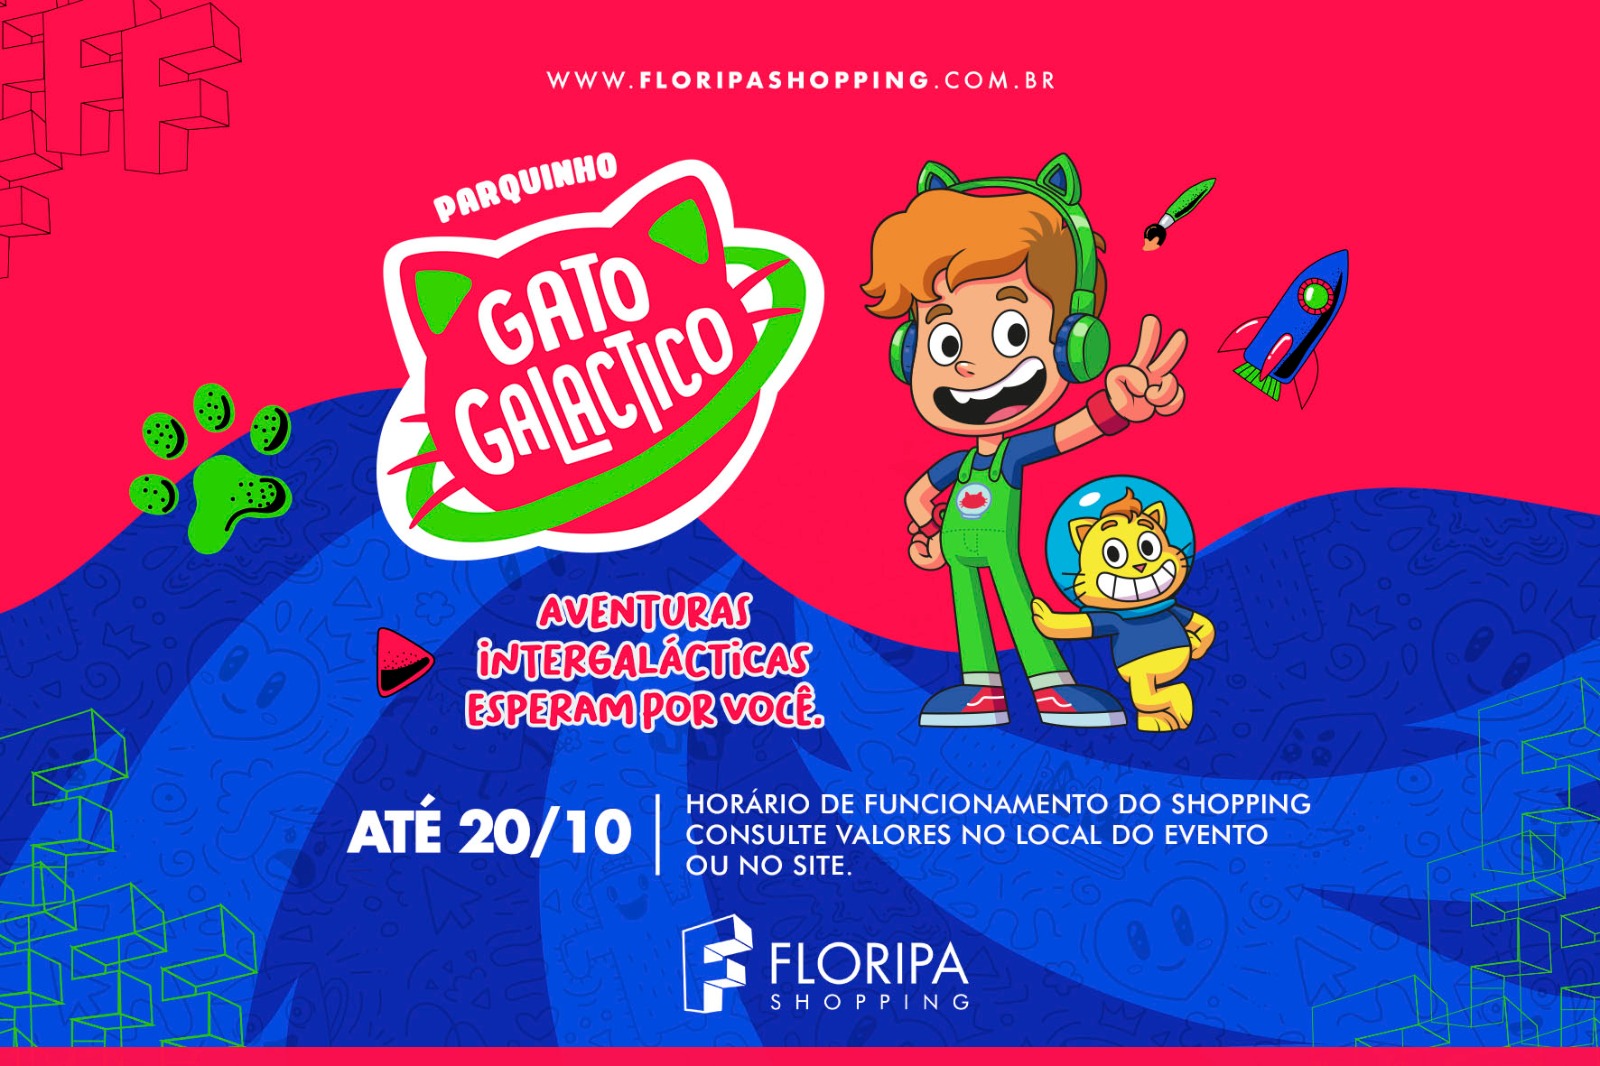 Gato Galactico se apresenta em Florianópolis no Dia das Crianças